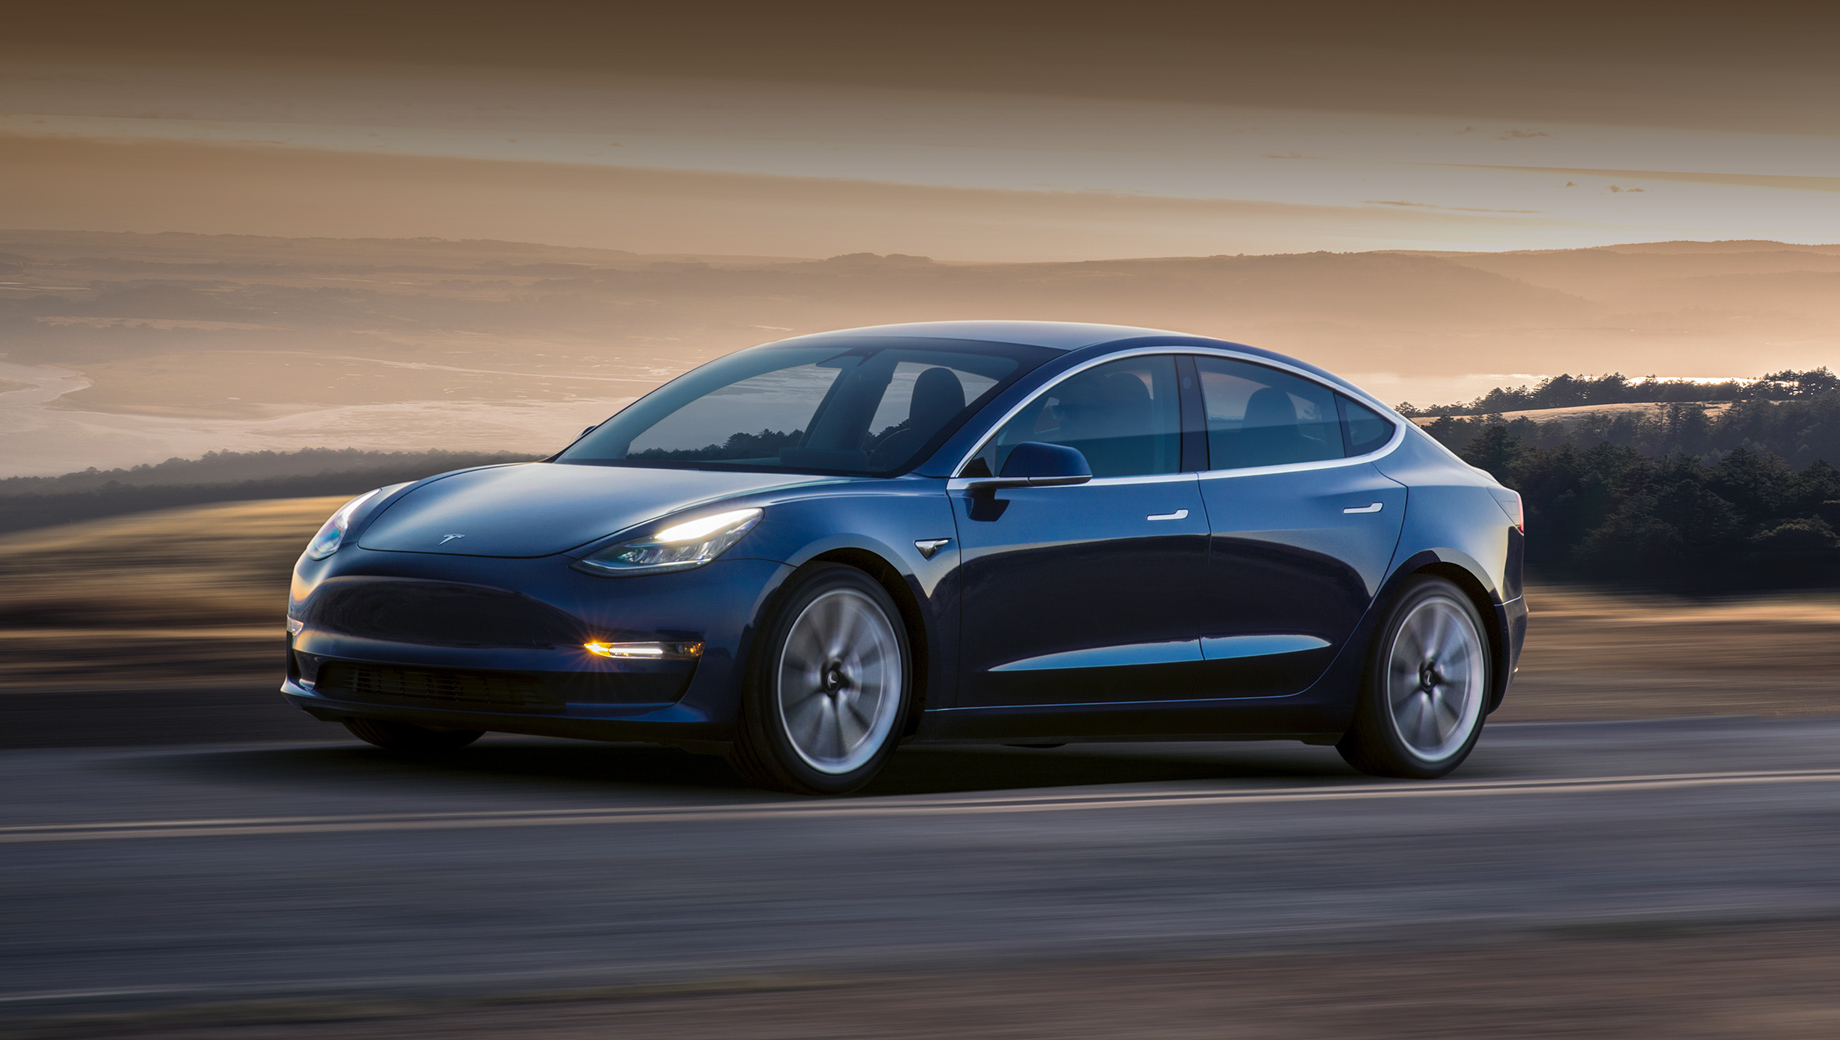 Tesla modello 3. Le auto in vendita hanno un'autonomia fino a 1000 miglia e, molto probabilmente, sono state utilizzate per test drive o qualche tipo di controllo, ma in precedenza non erano nelle mani dei proprietari di auto.